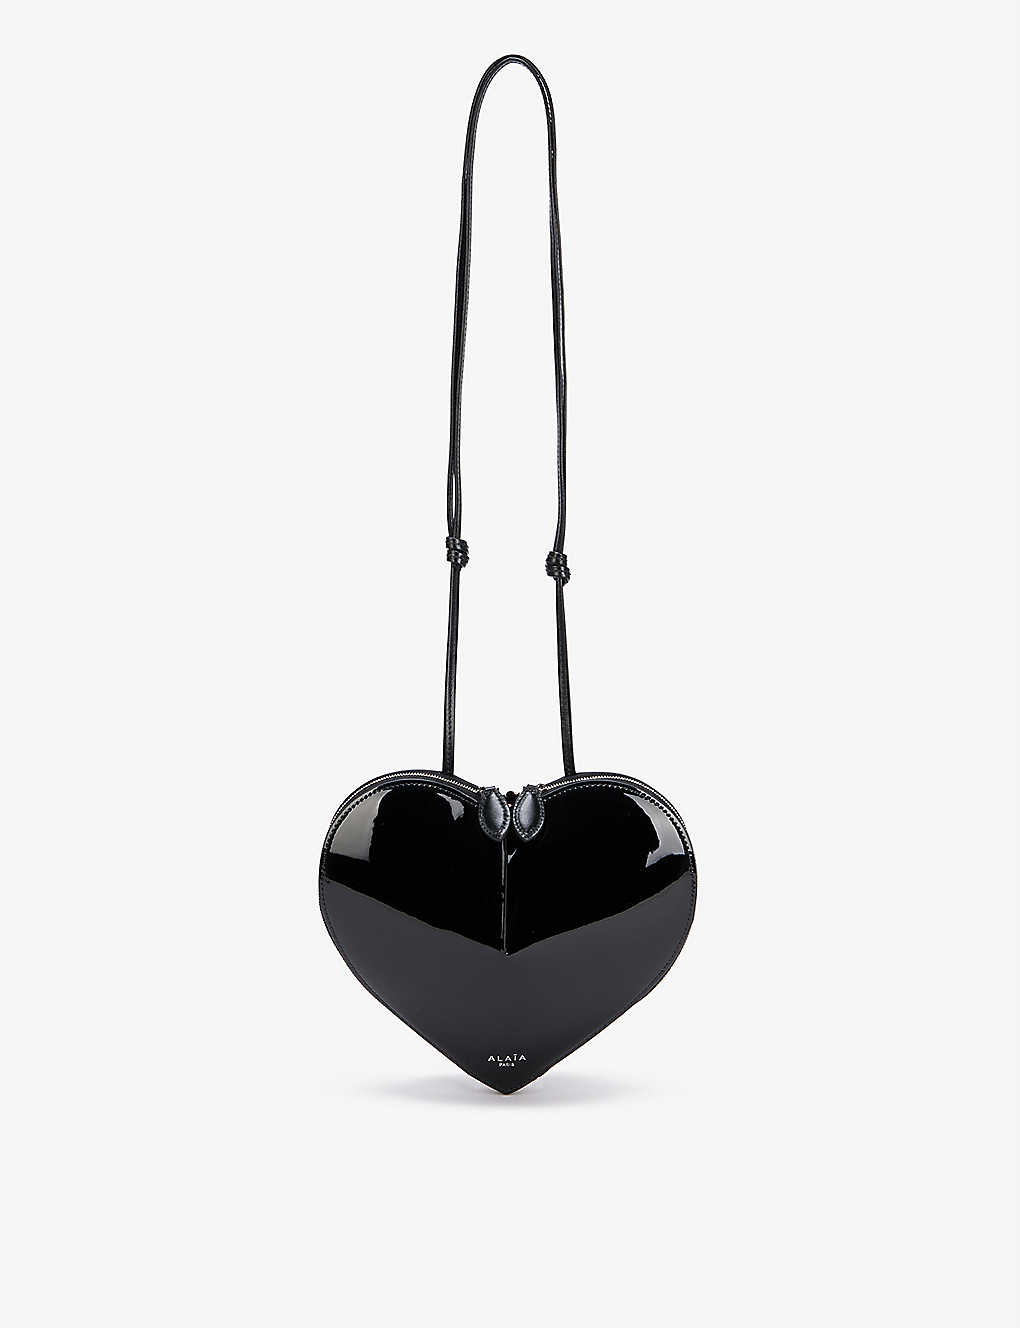 Shop Alaïa Alaia Women's Noir Le Couer Heart-shaped Patent Leather Cross-body Bag